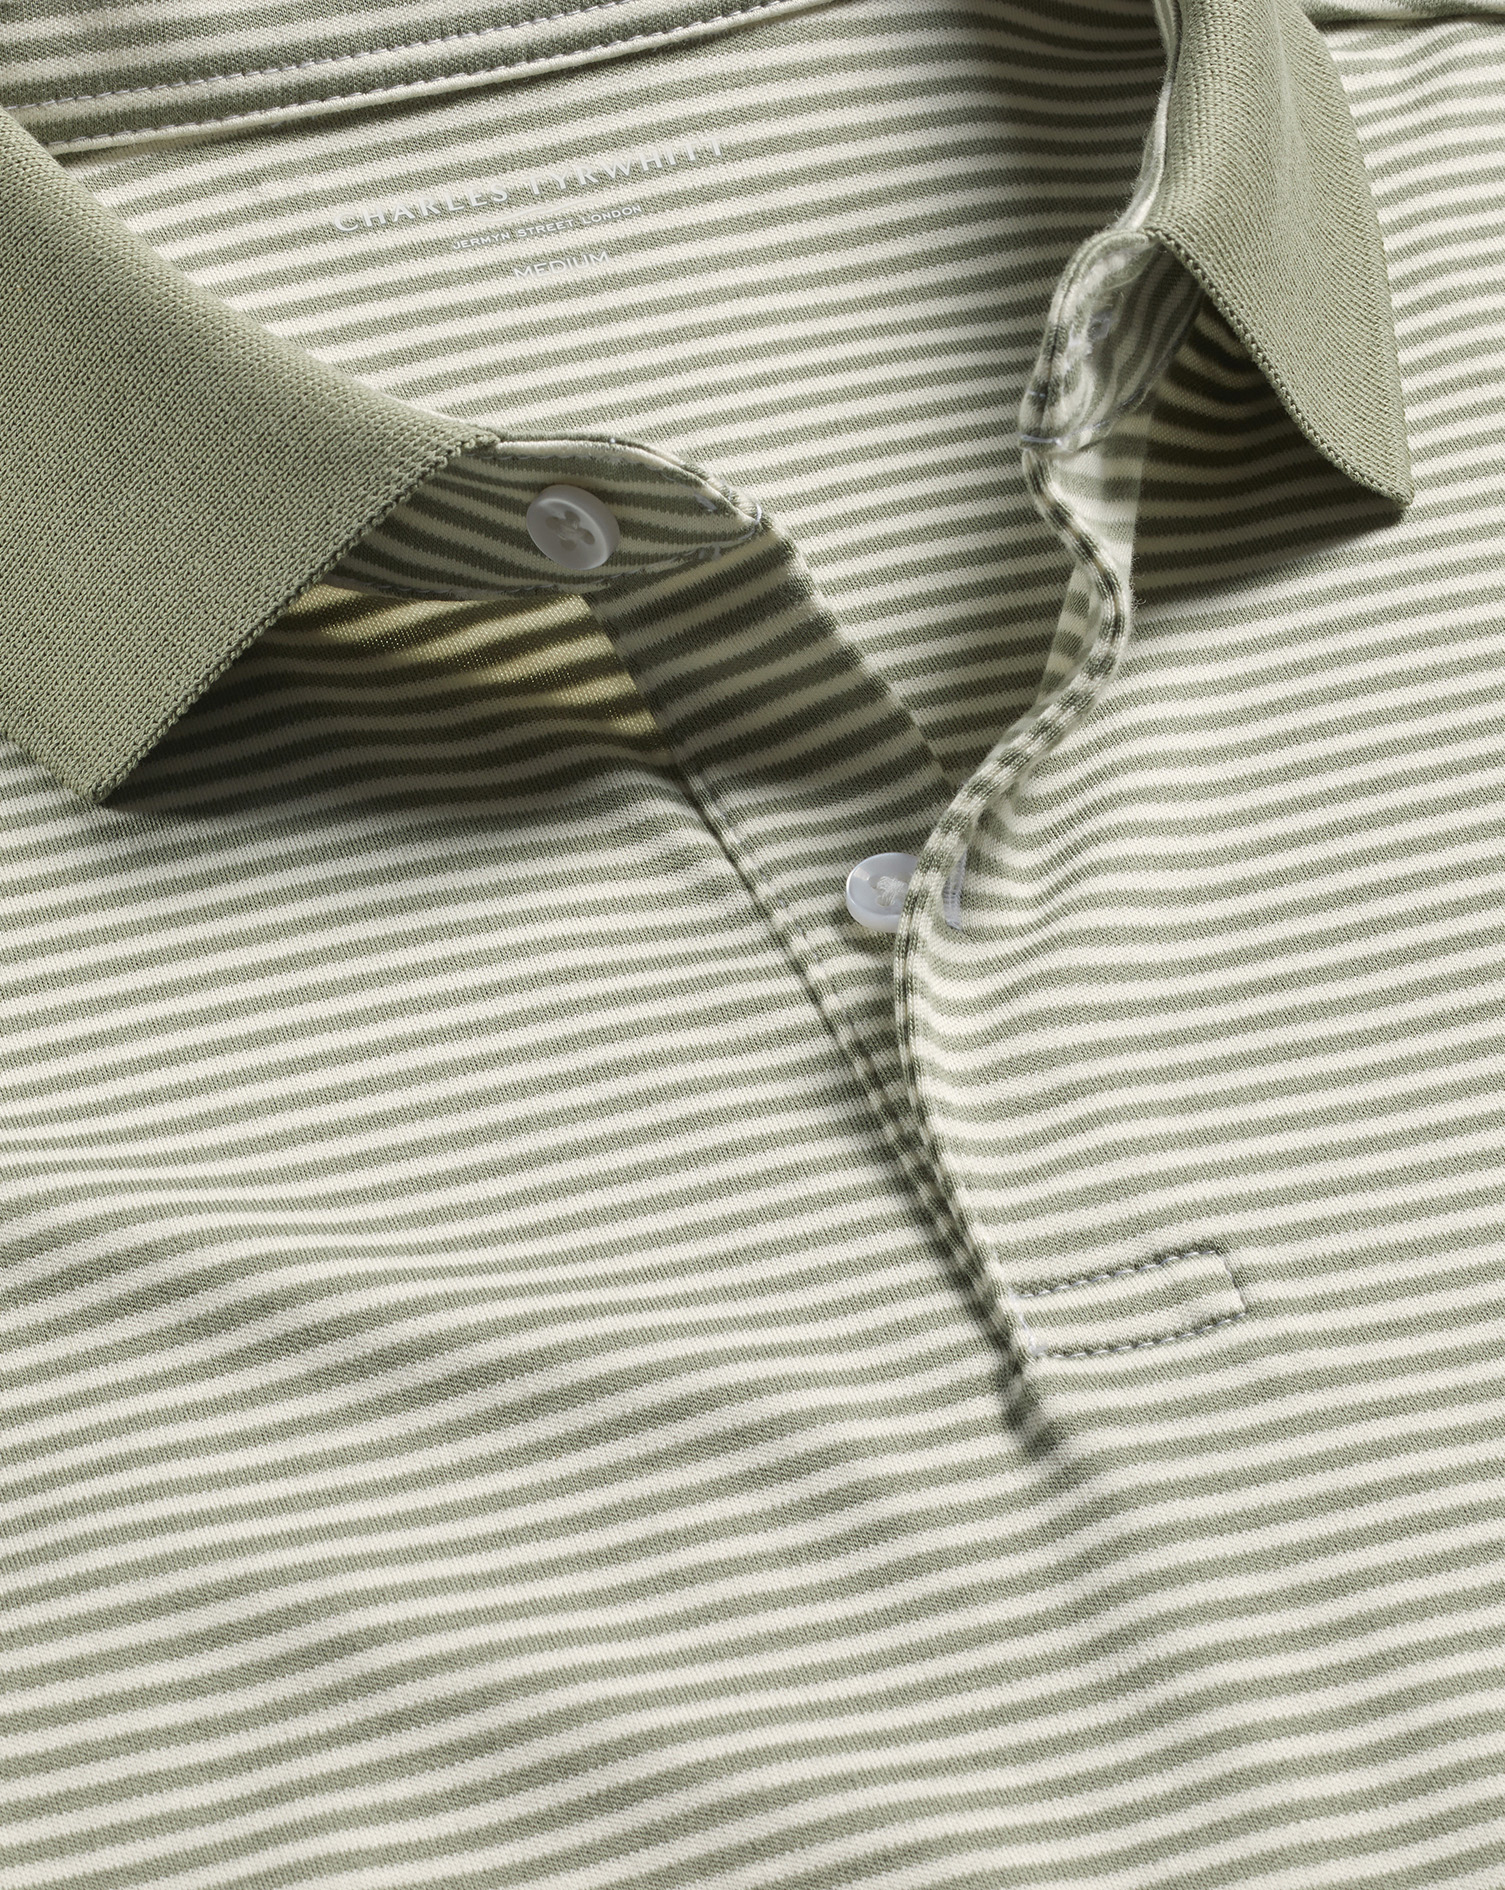 Men's Charles Tyrwhitt Fine Stripe Jersey Polo Shirt - Sage Green & Ecru Size XXXL Cotton
